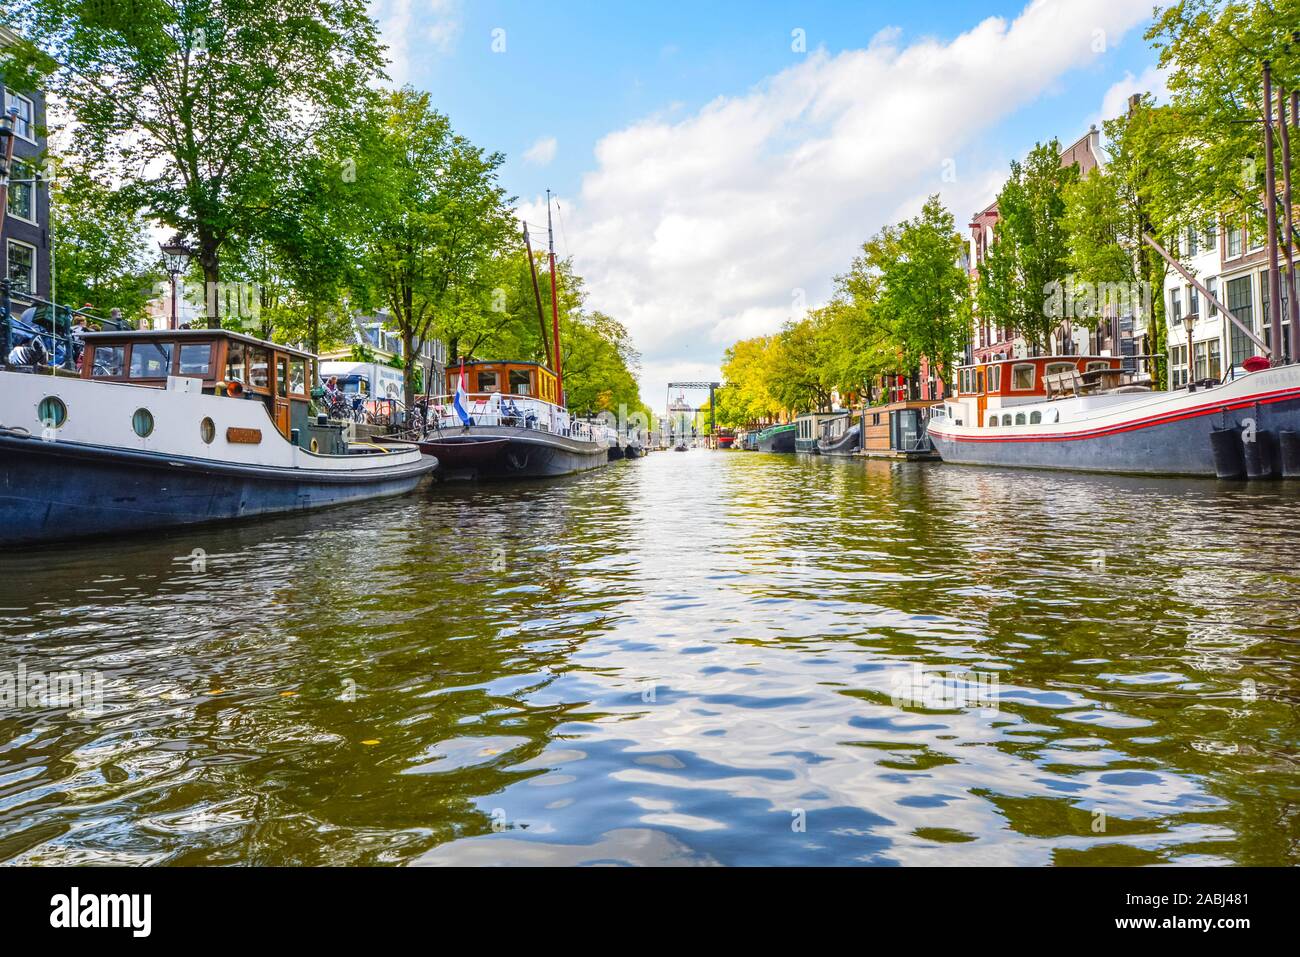 Livello acqua vista da un tour in barca in autunno di un canale residenziale pieno di barche e case galleggianti in Amsterdam, Paesi Bassi. Foto Stock